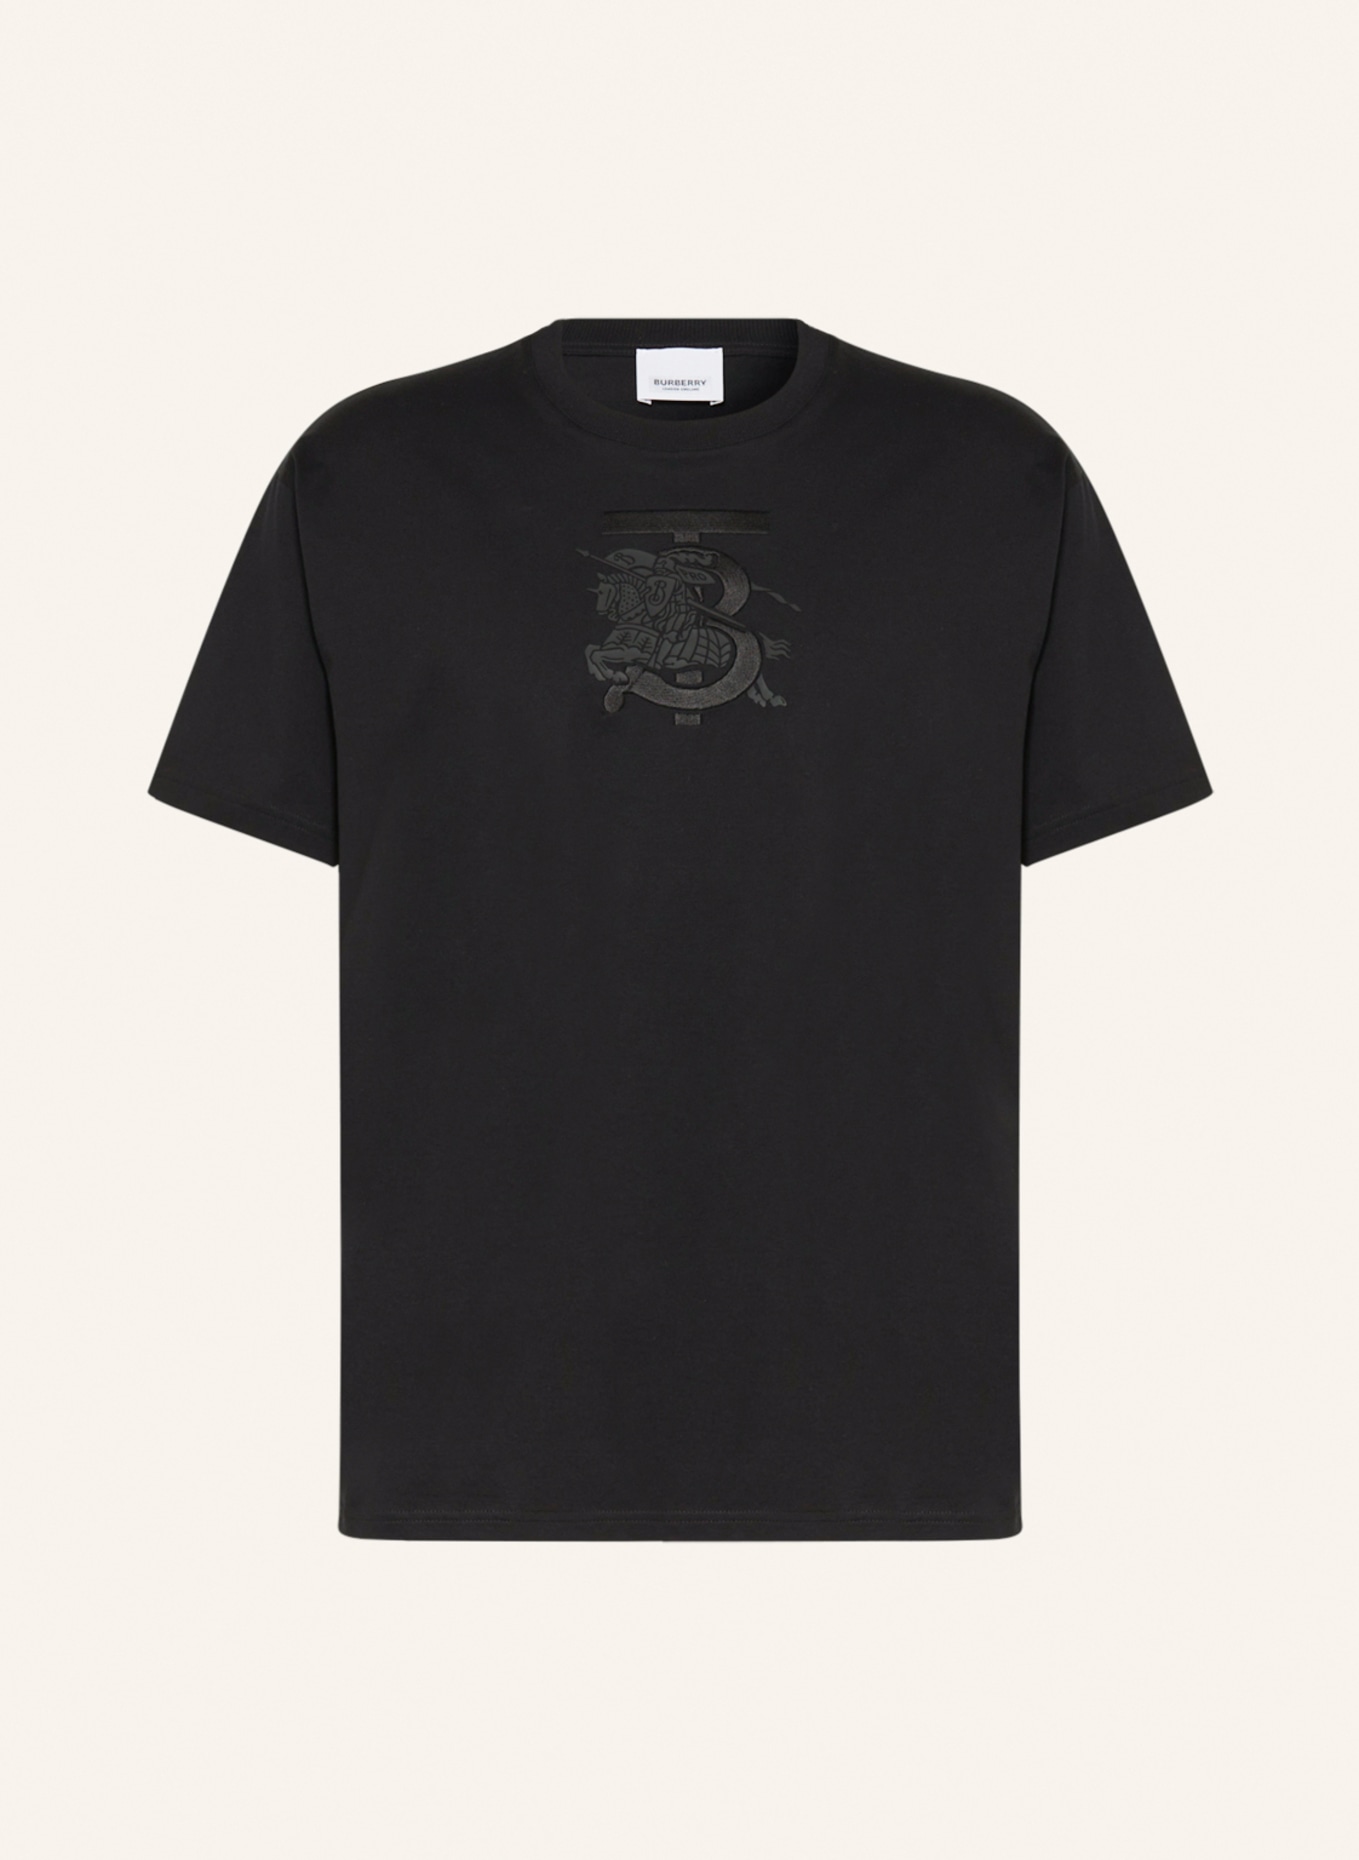 BURBERRY T-shirt TRISTAN, Color: BLACK (Image 1)